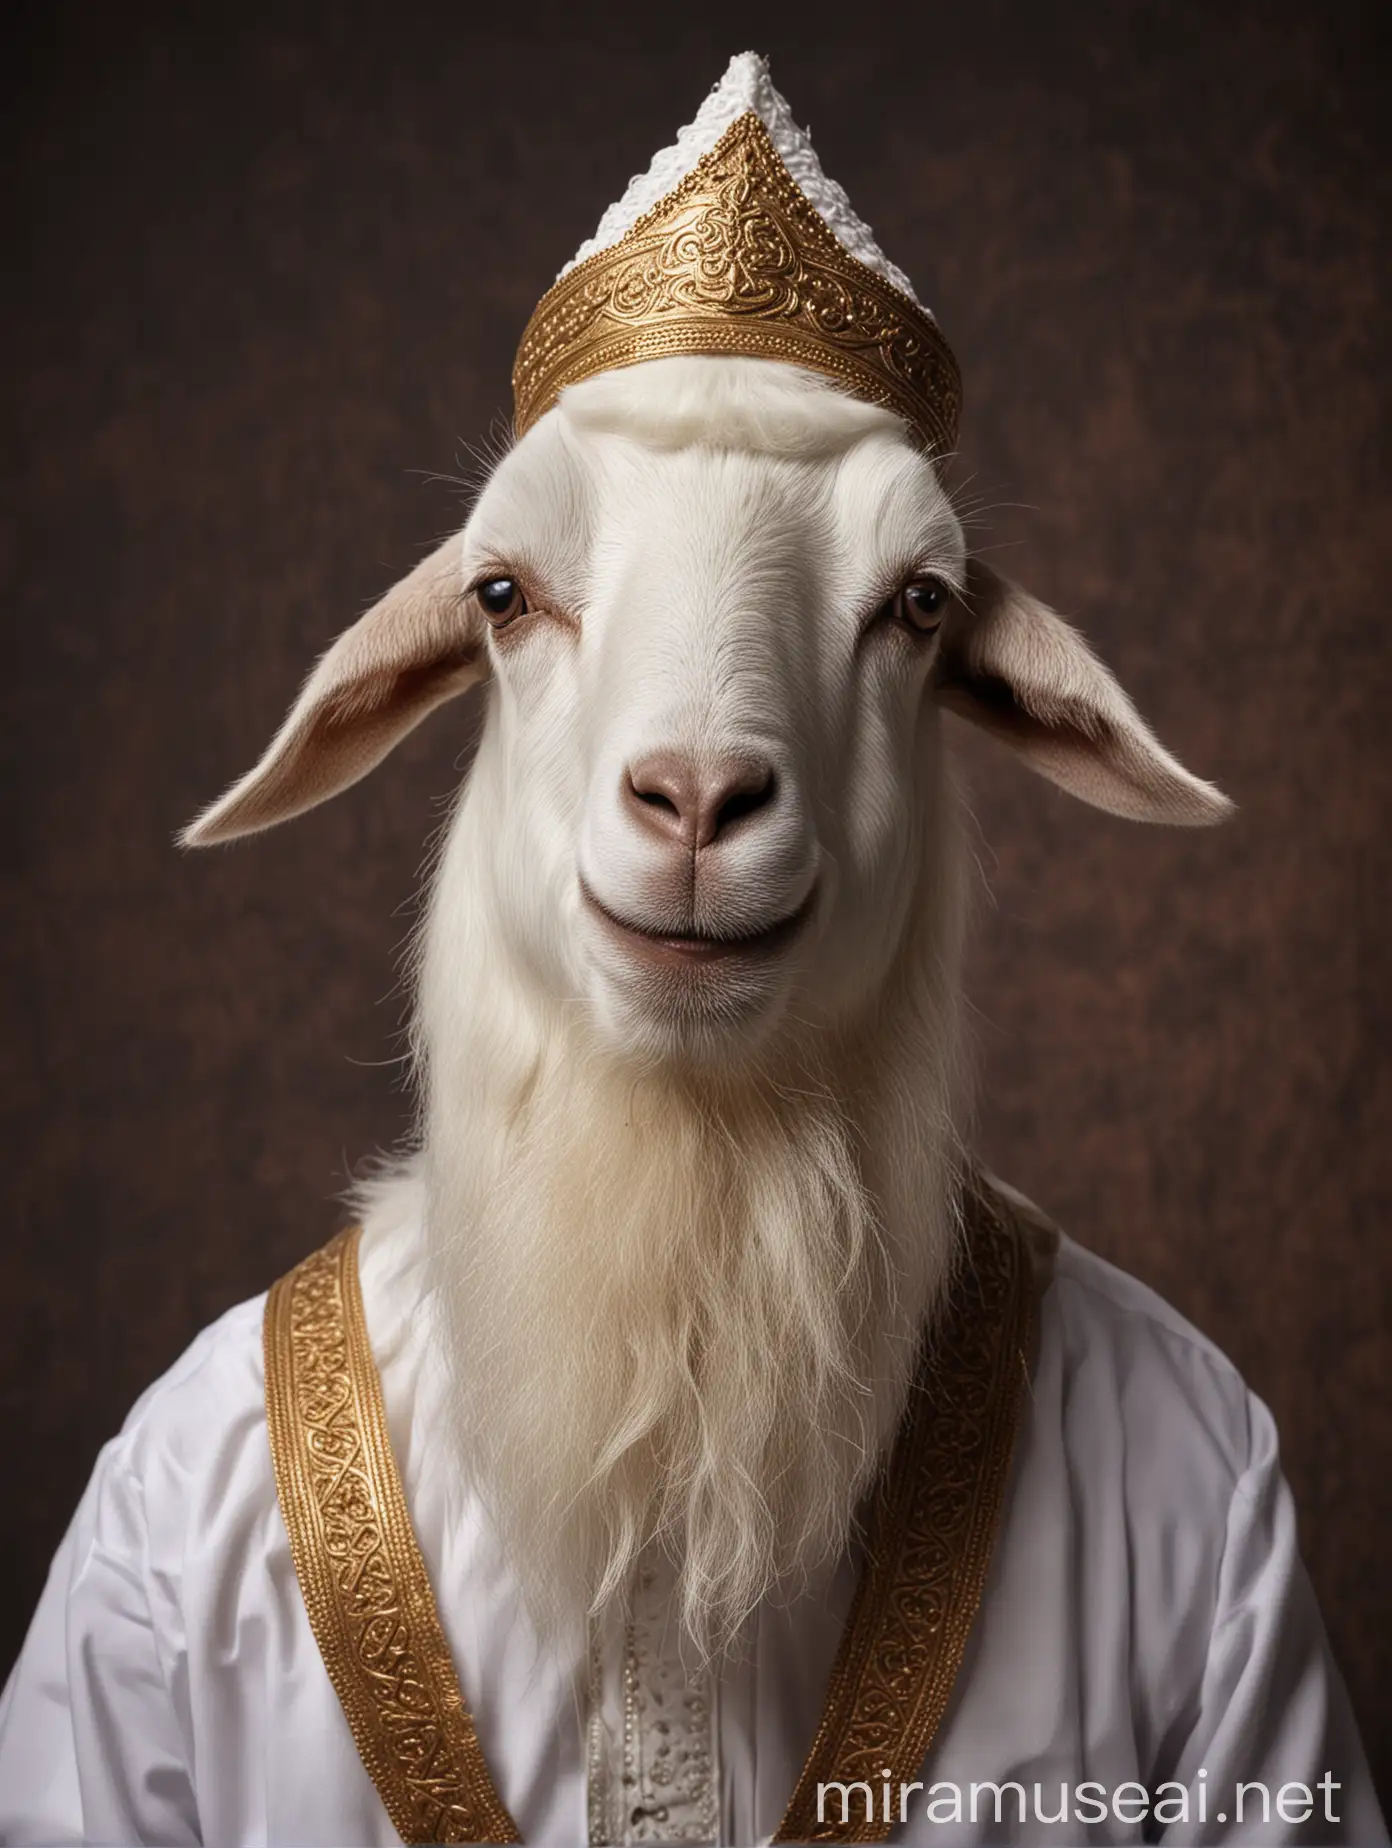 Eid alAdha Celebration Muslim Goat Dressed as Sheikh Amidst Festive Background